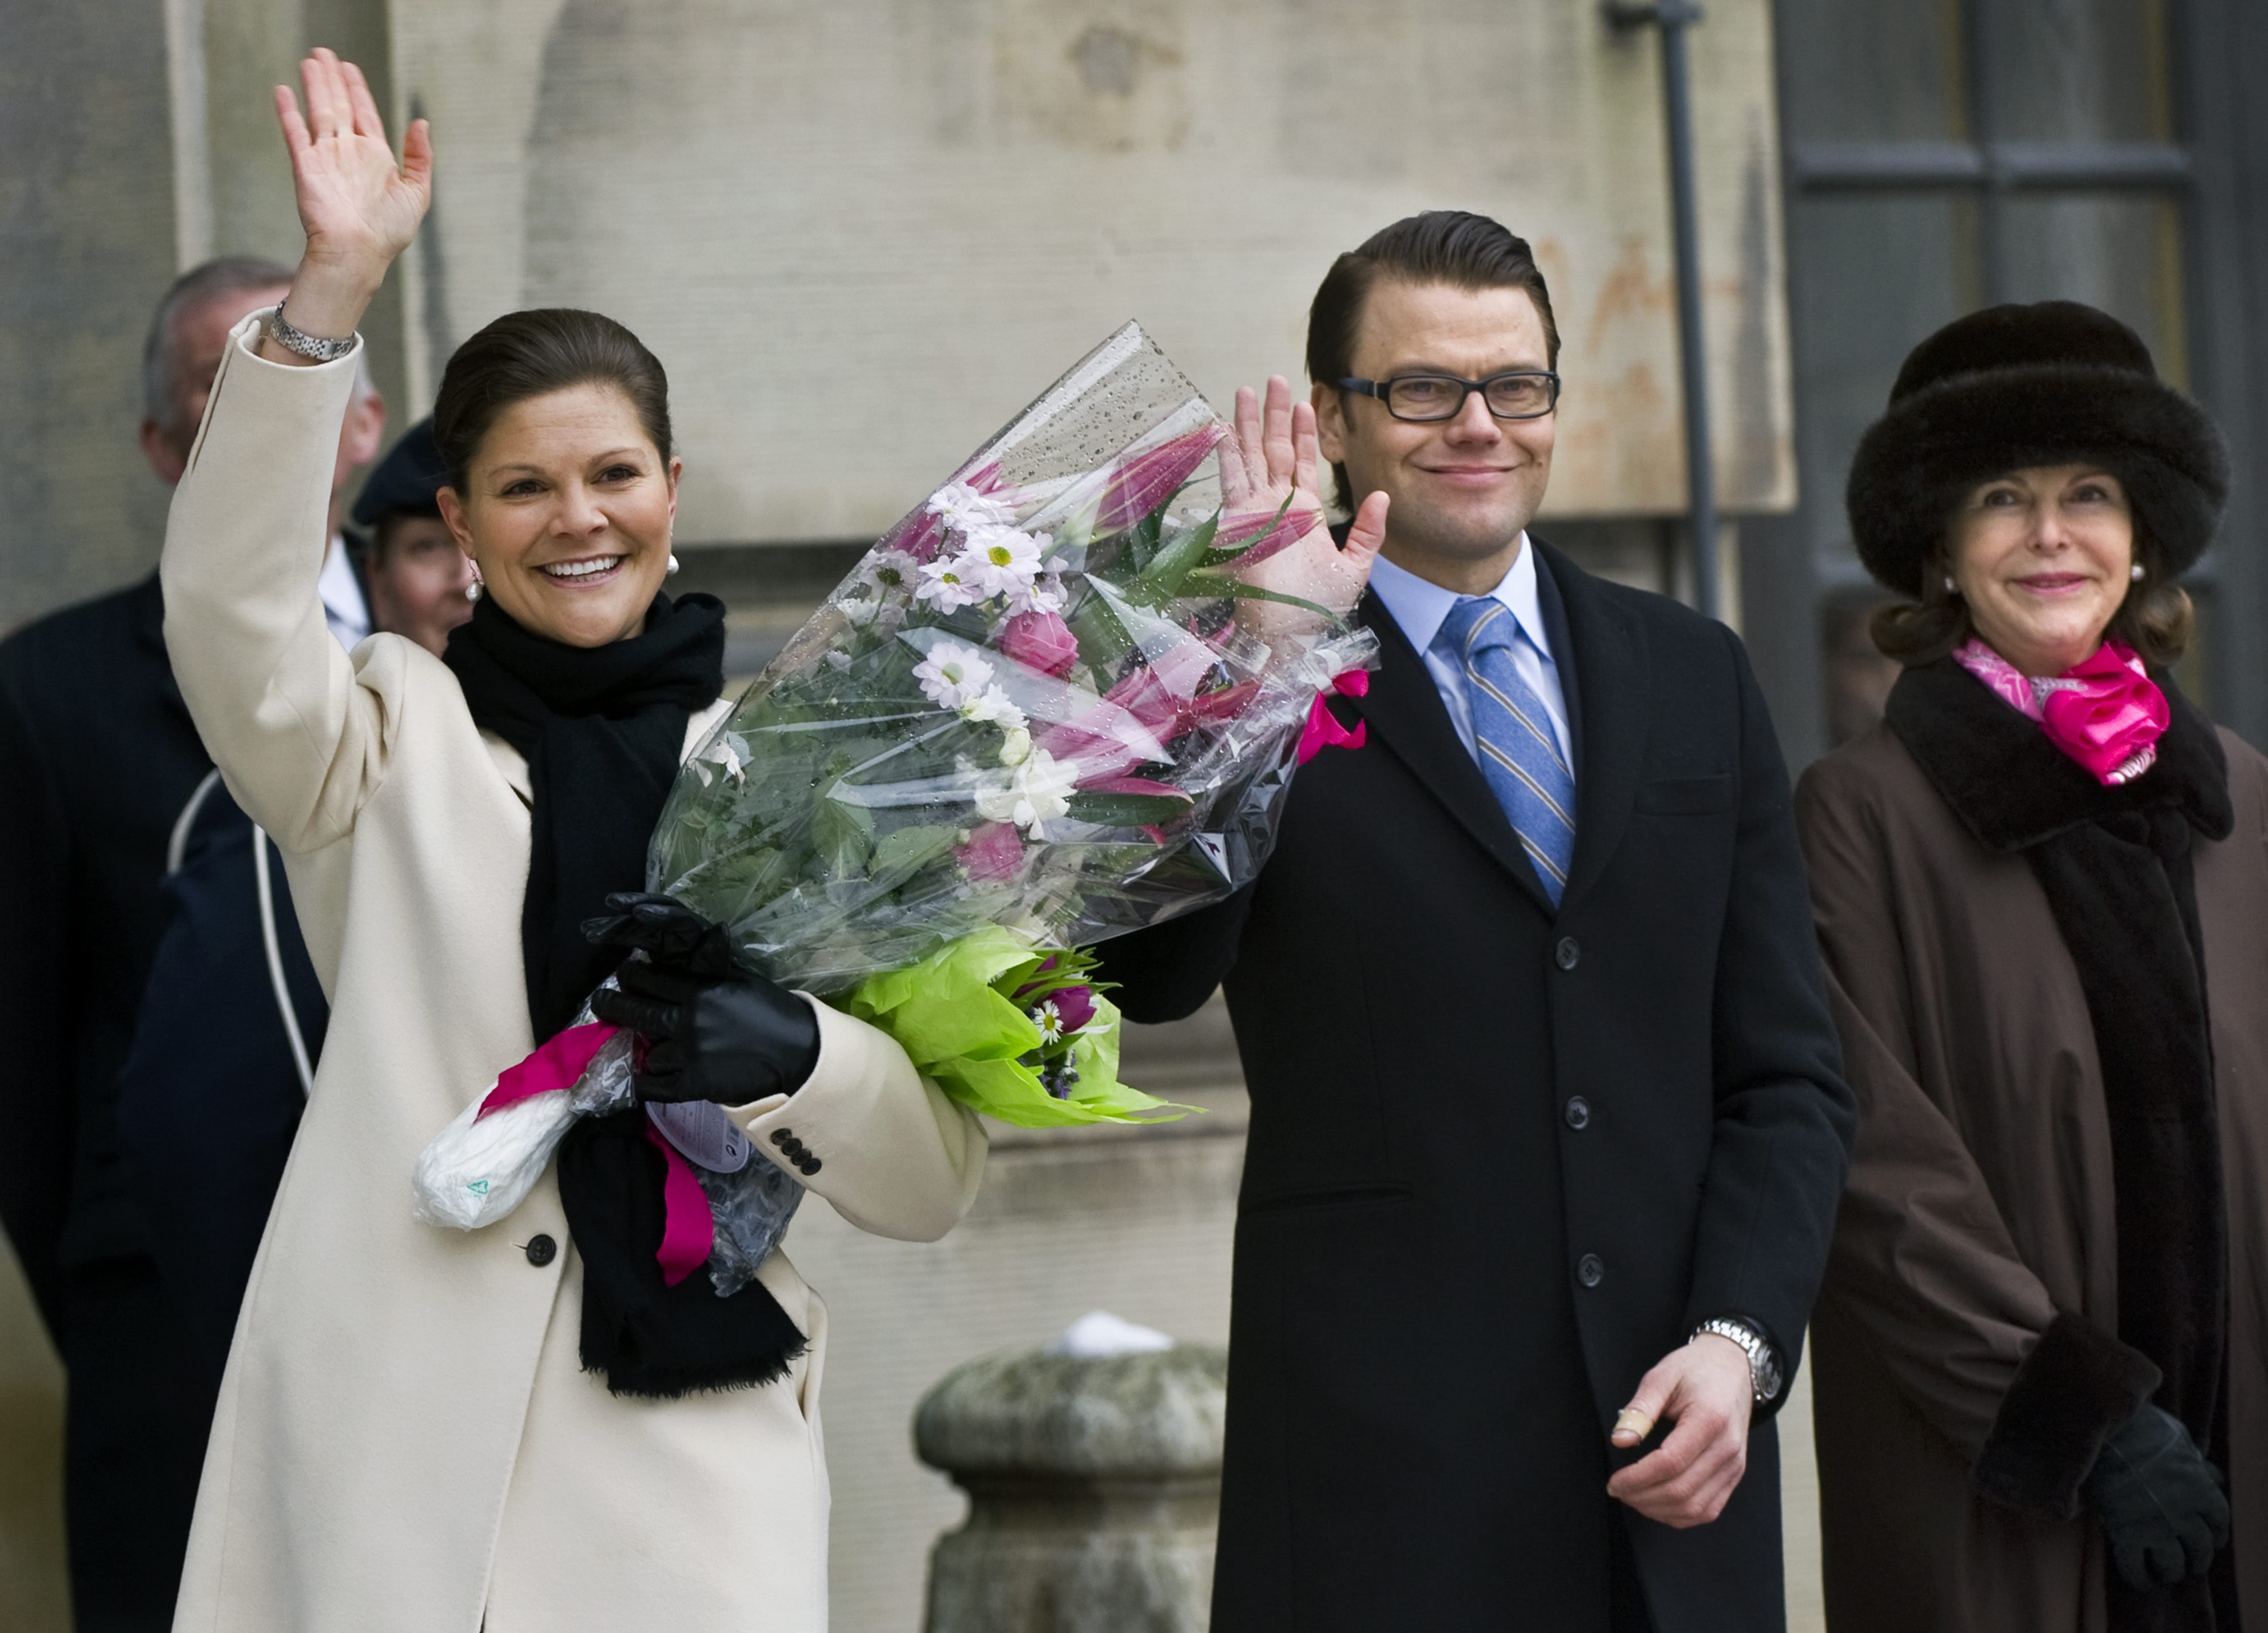 Kungliga bröllop, Gudrun Schyman, Feministiskt initiativ, Prins Daniel, kronprinsessan Victoria, Kungligt, President, Riksdagsvalet 2010, Republik, Monarki